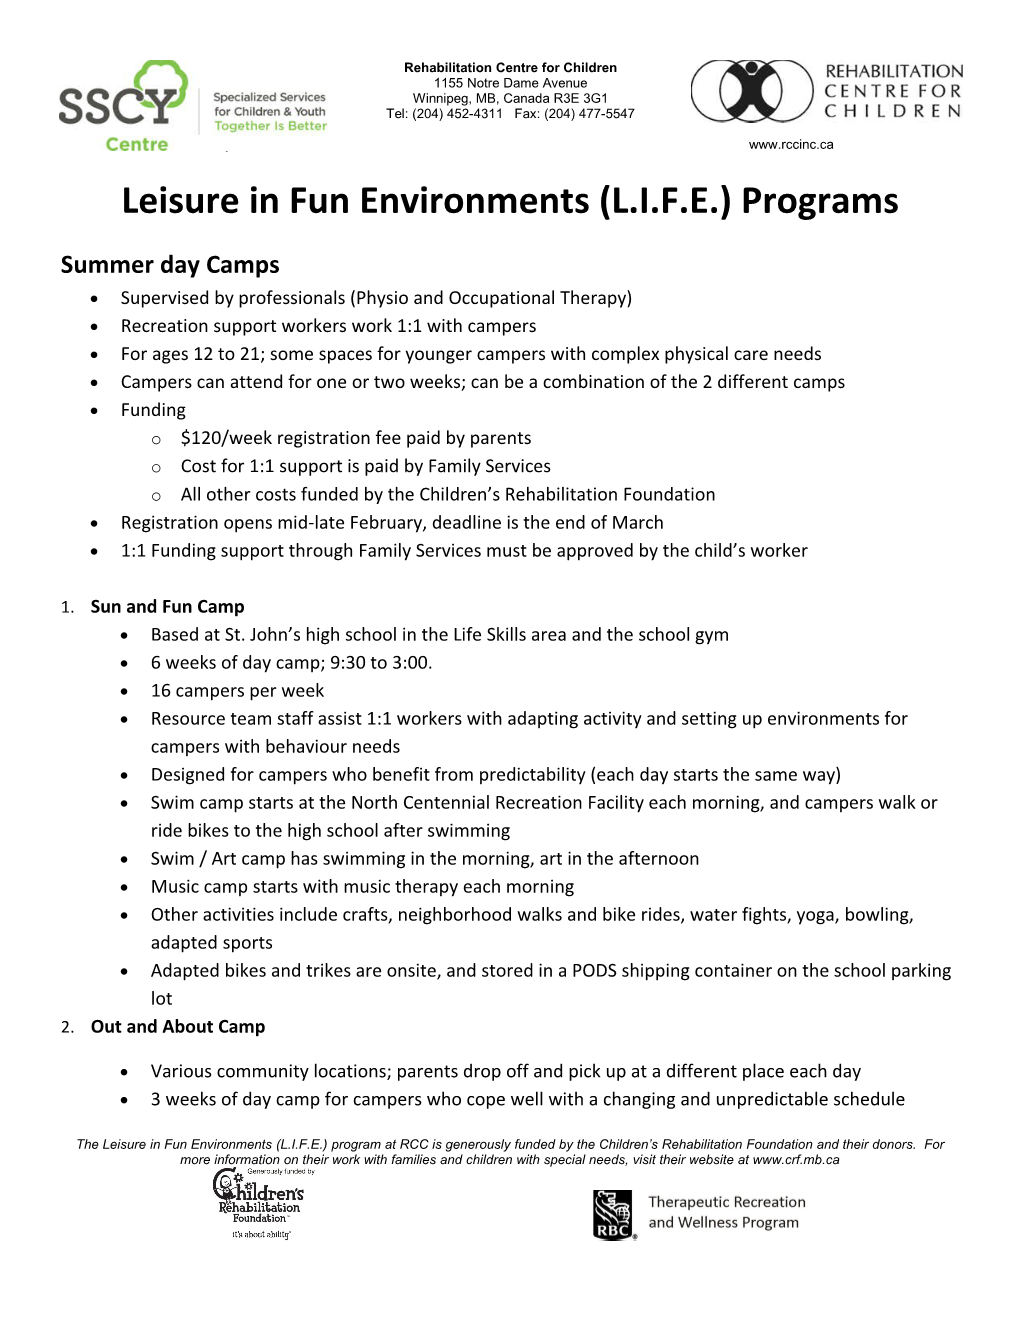 Leisure in Fun Environments (L.I.F.E.) Programs